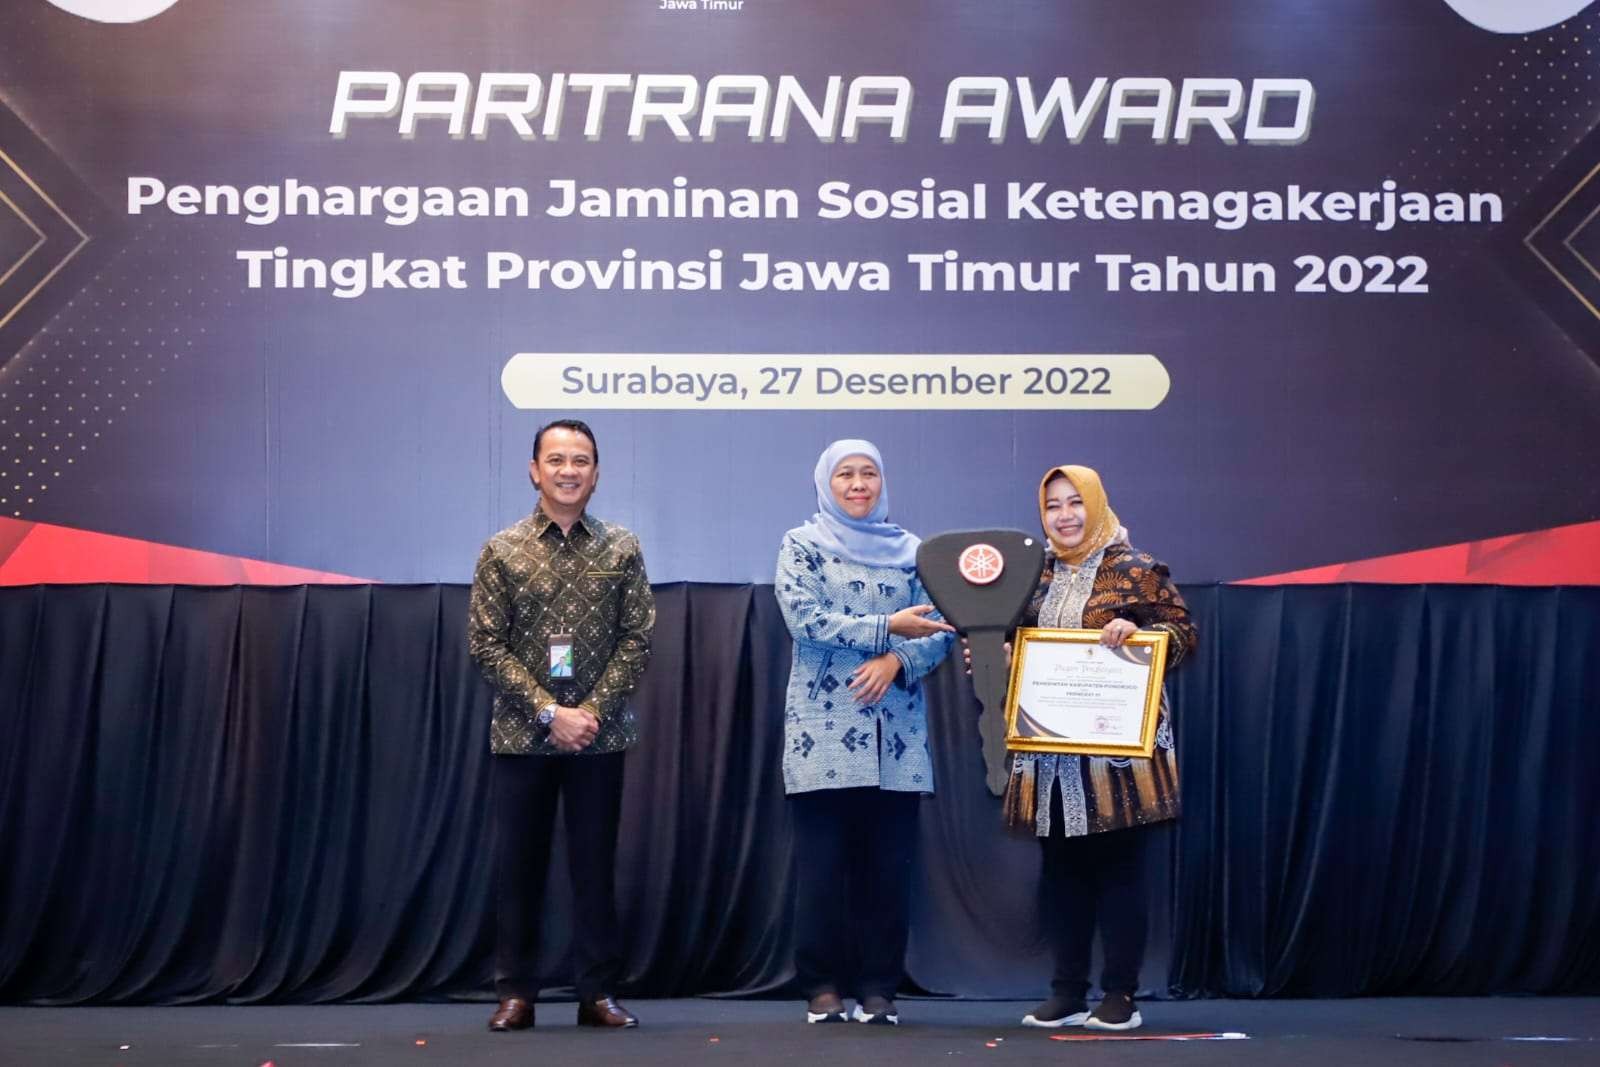 Gubernur Jatim, Khofifah Indar Parawansa (tengah) menyerahkan penghargaan Paritrana Award 2022 di Hotel Shangri-La, Surabaya, Selasa 27 Desember 2022. (Foto: Humas Prov Jatim)